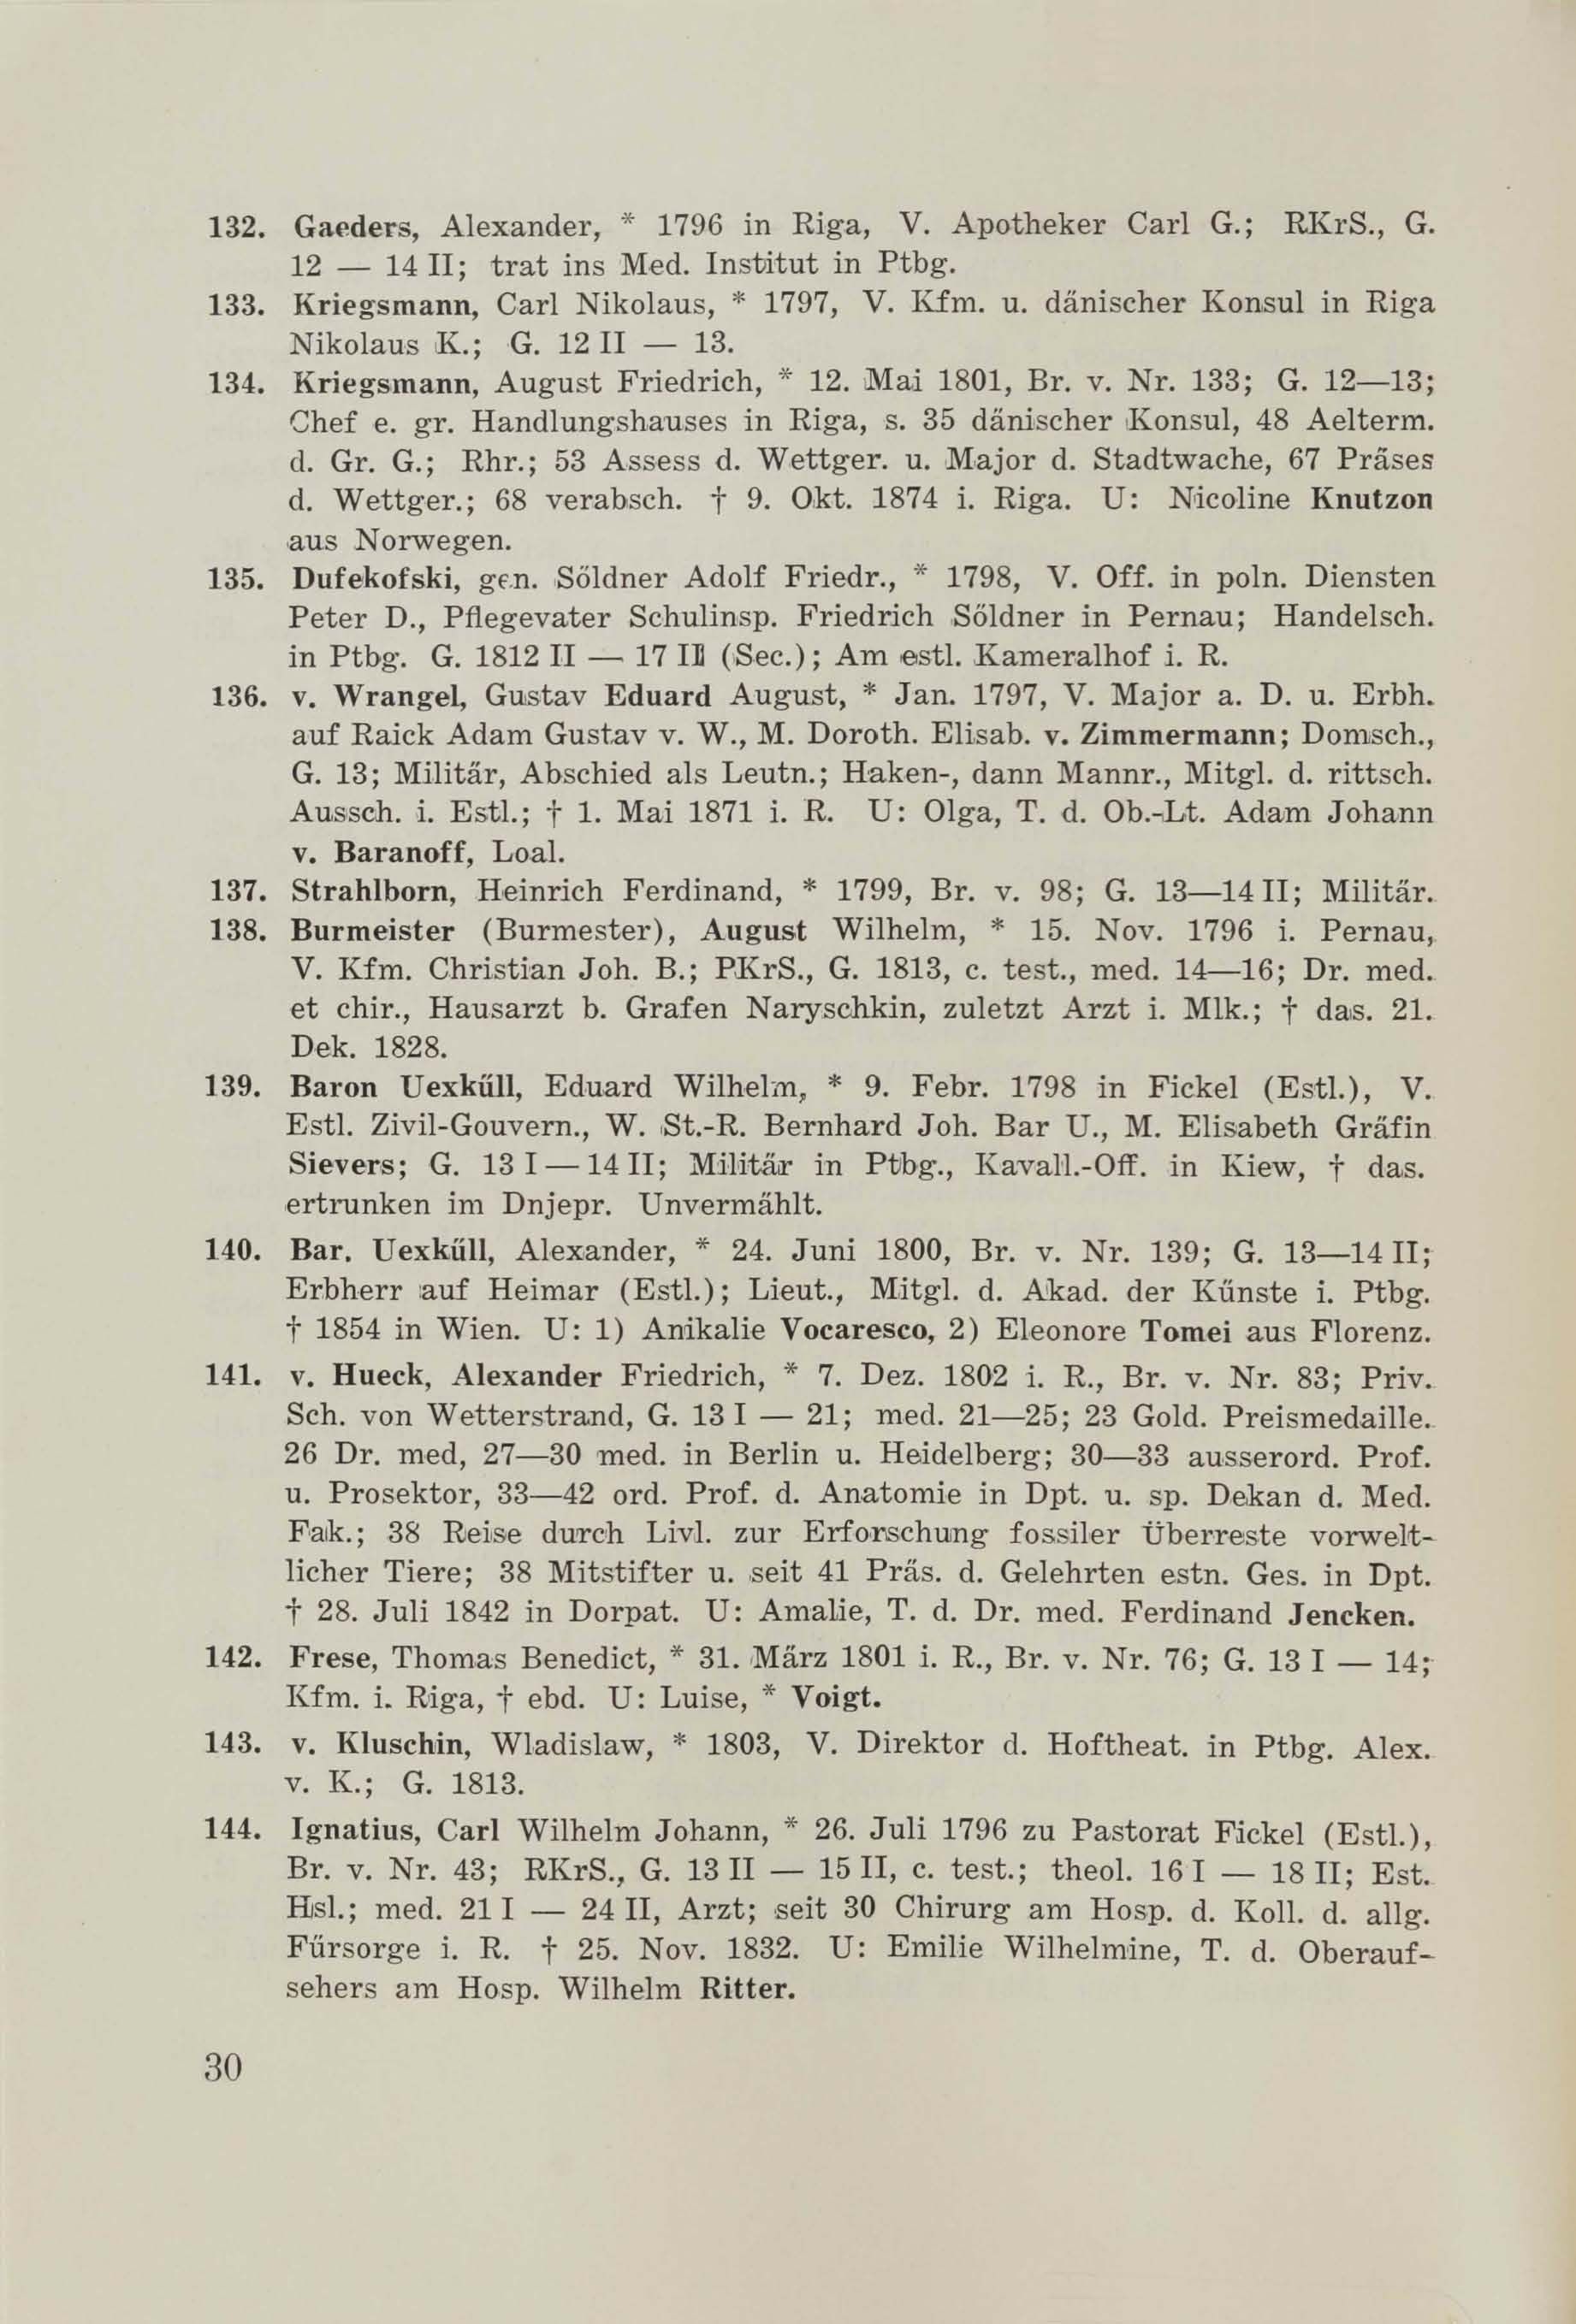 Schüler-Verzeichnis des Revalschen Gouvernements-Gymnasiums 1805–1890 (1931) | 40. (30) Main body of text